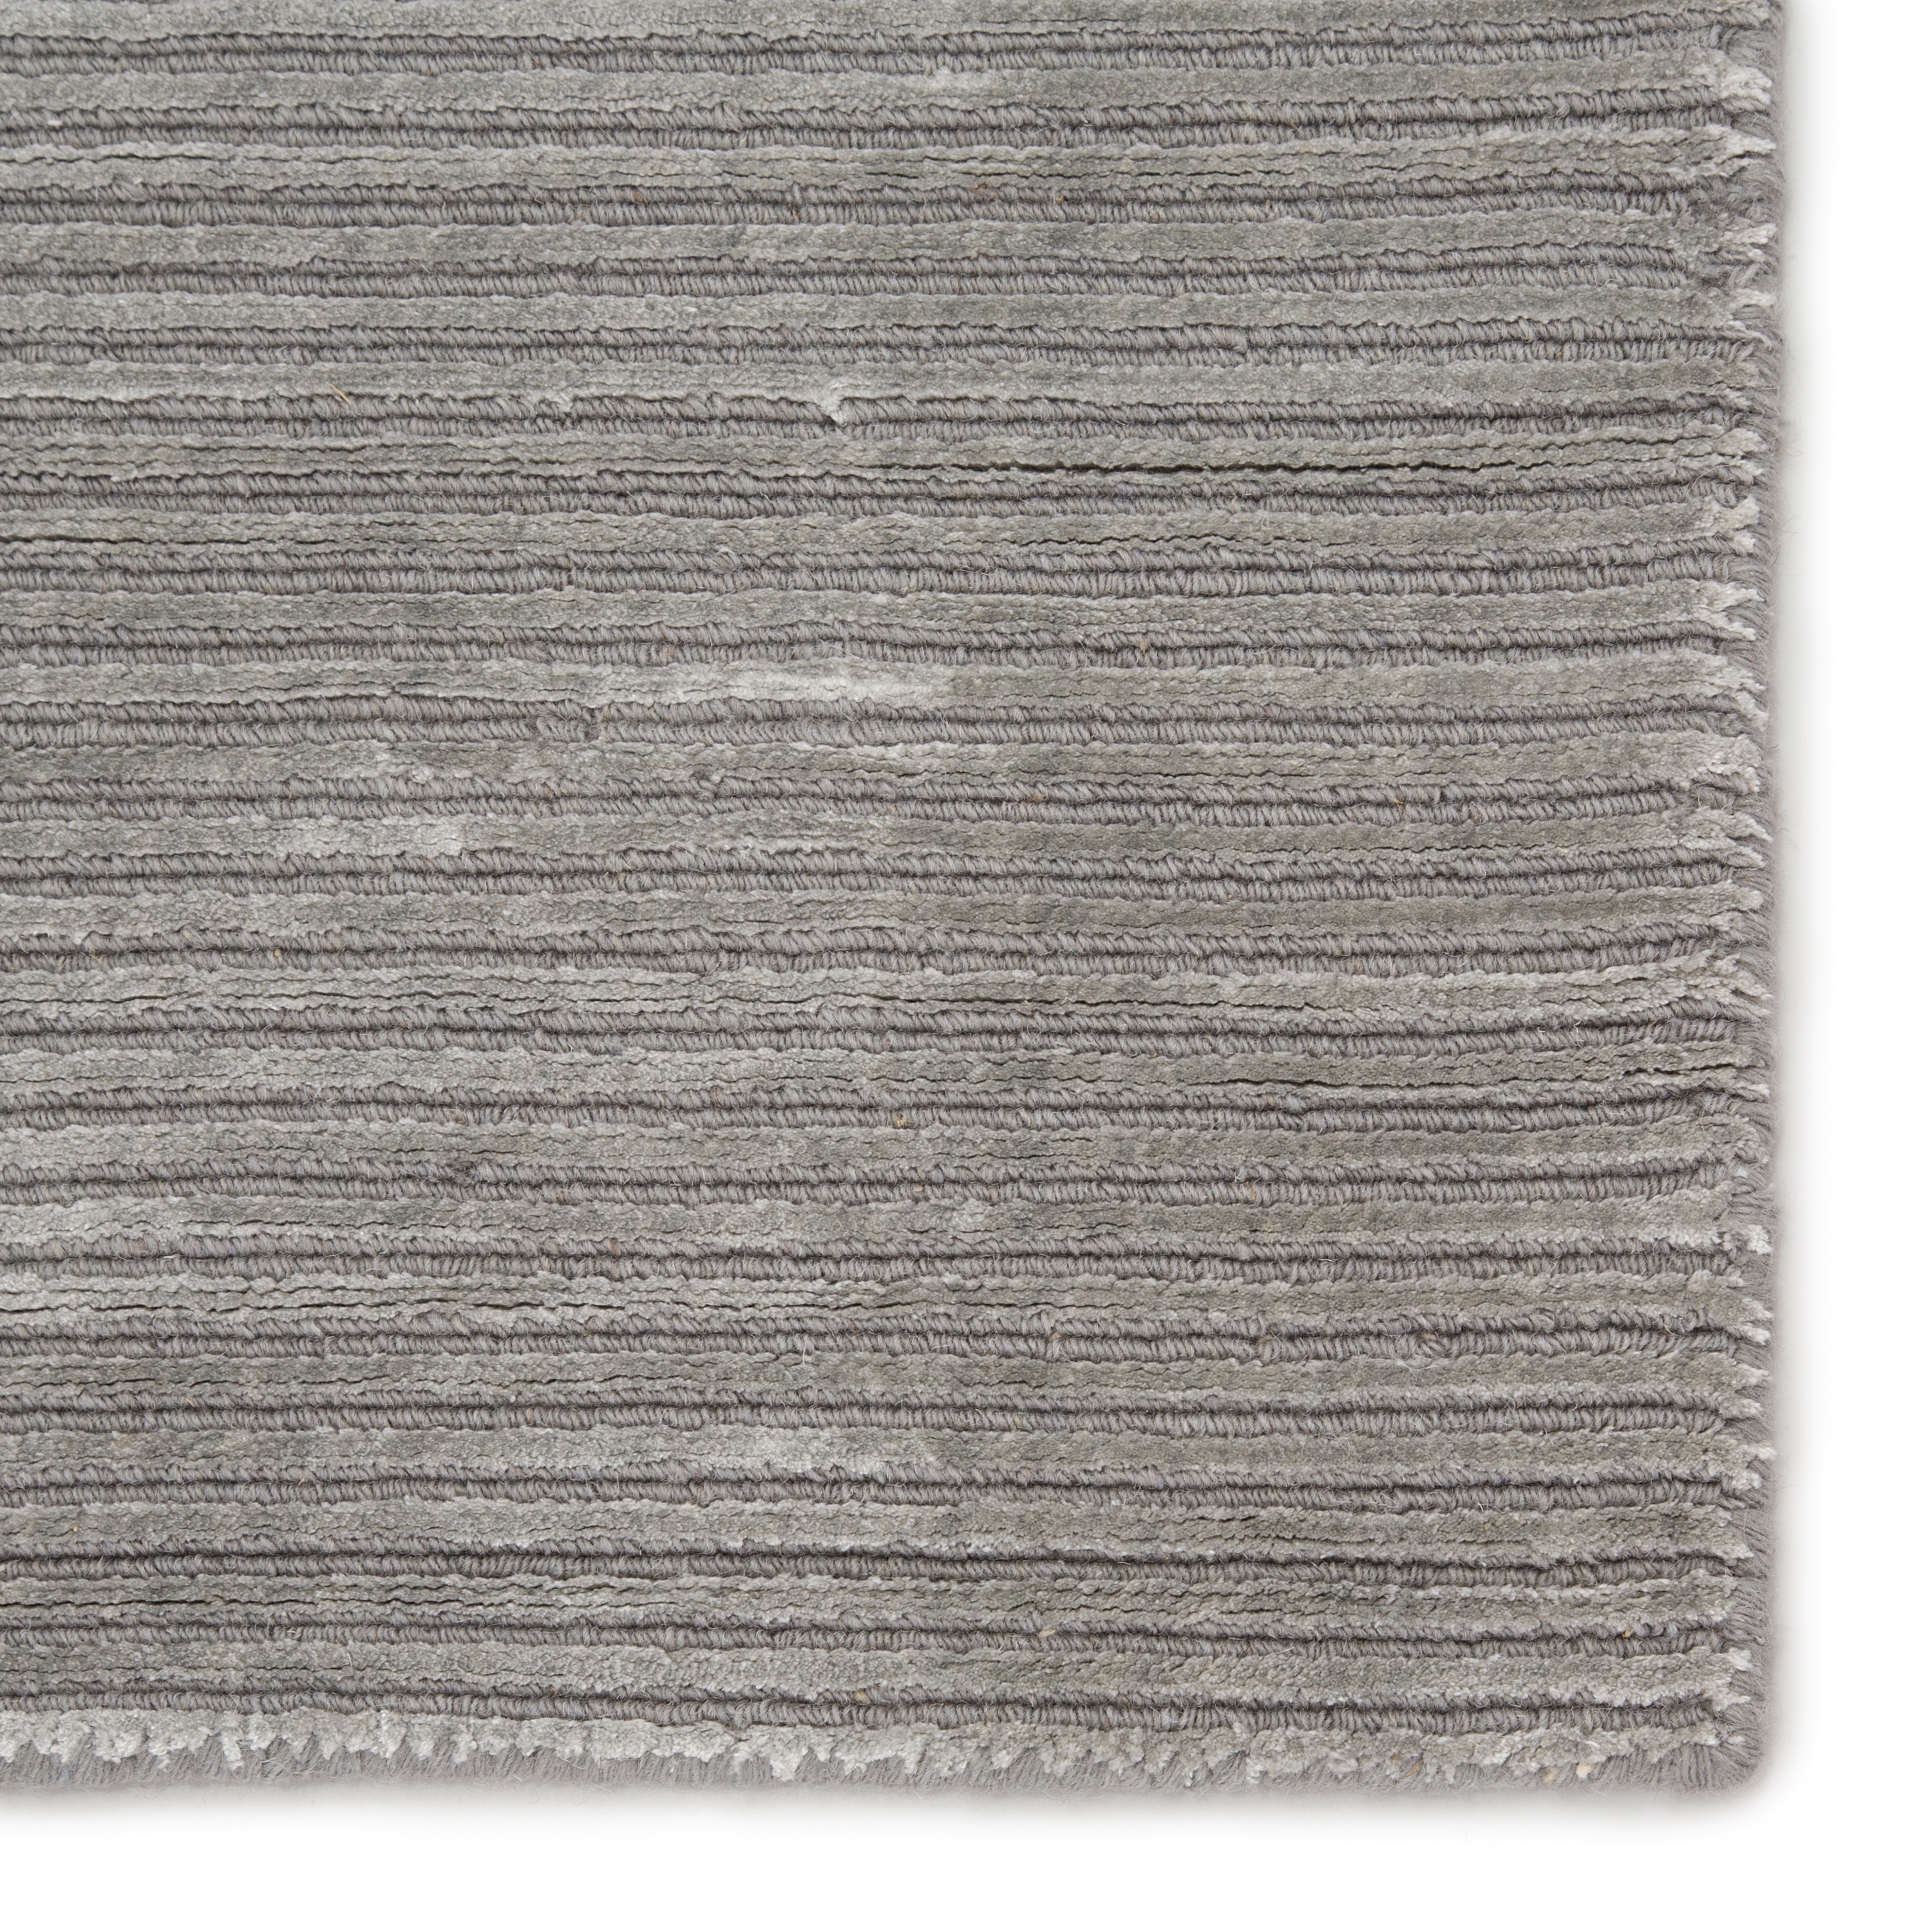 Basis Handmade Solid Gray/ Silver Area Rug (9' X 12') - Image 3